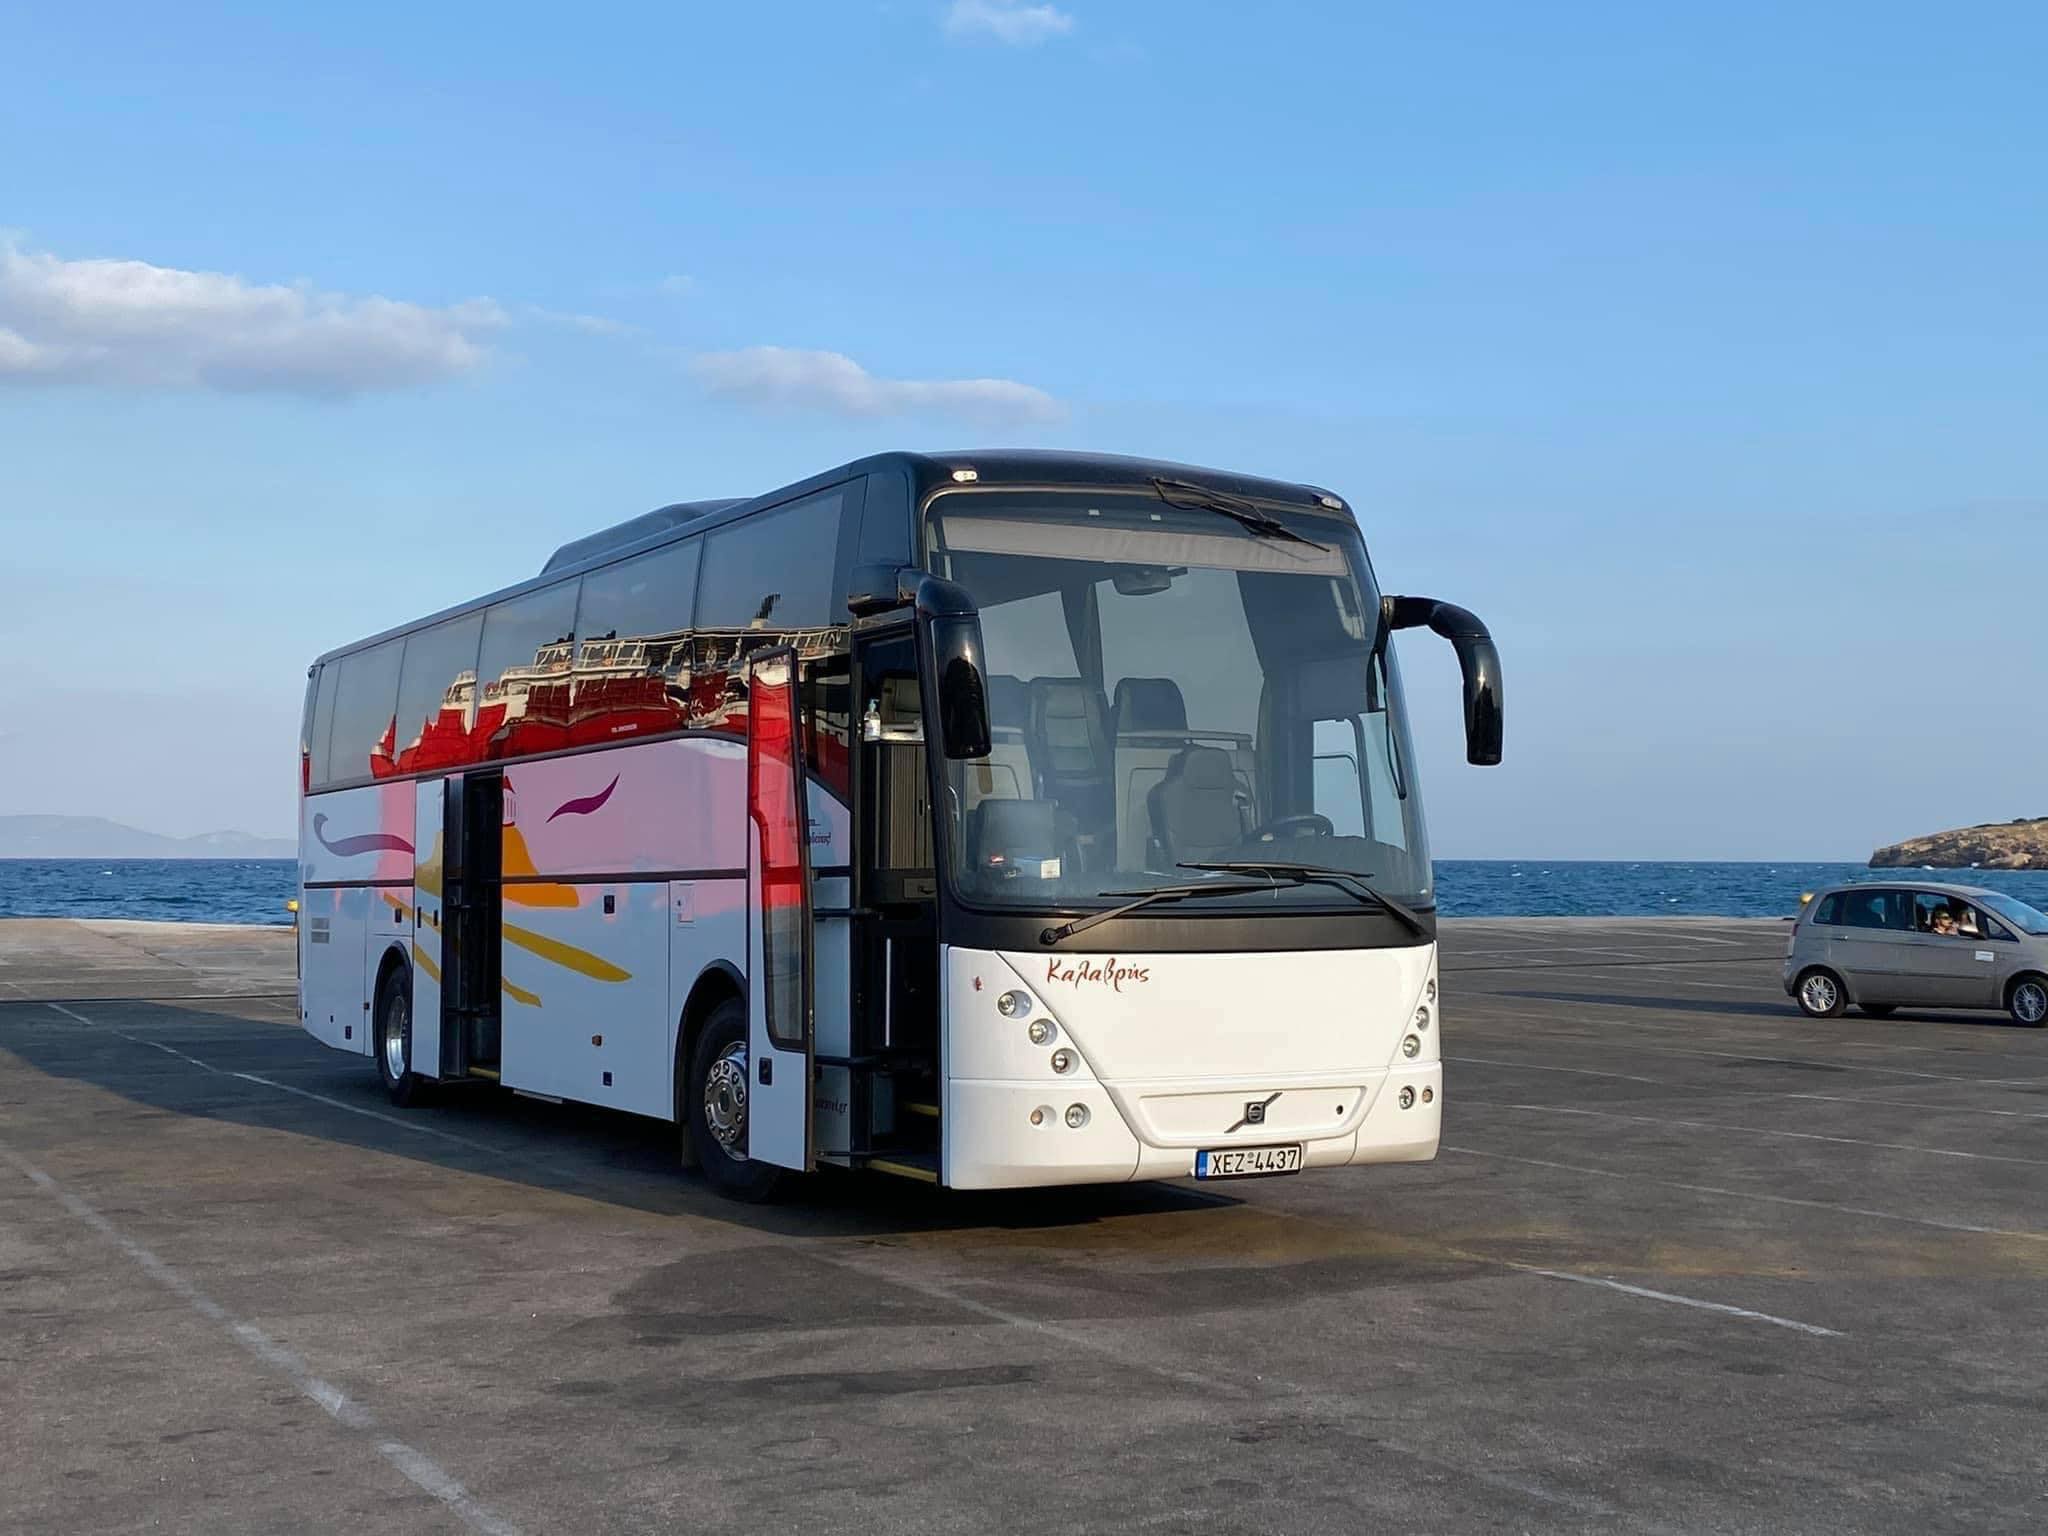 Τροχαίο στον Παρνασσό: Αγανακτισμένη ανάρτηση του Ευβοιώτη ιδιοκτήτη της εταιρείας του λεωφορείου